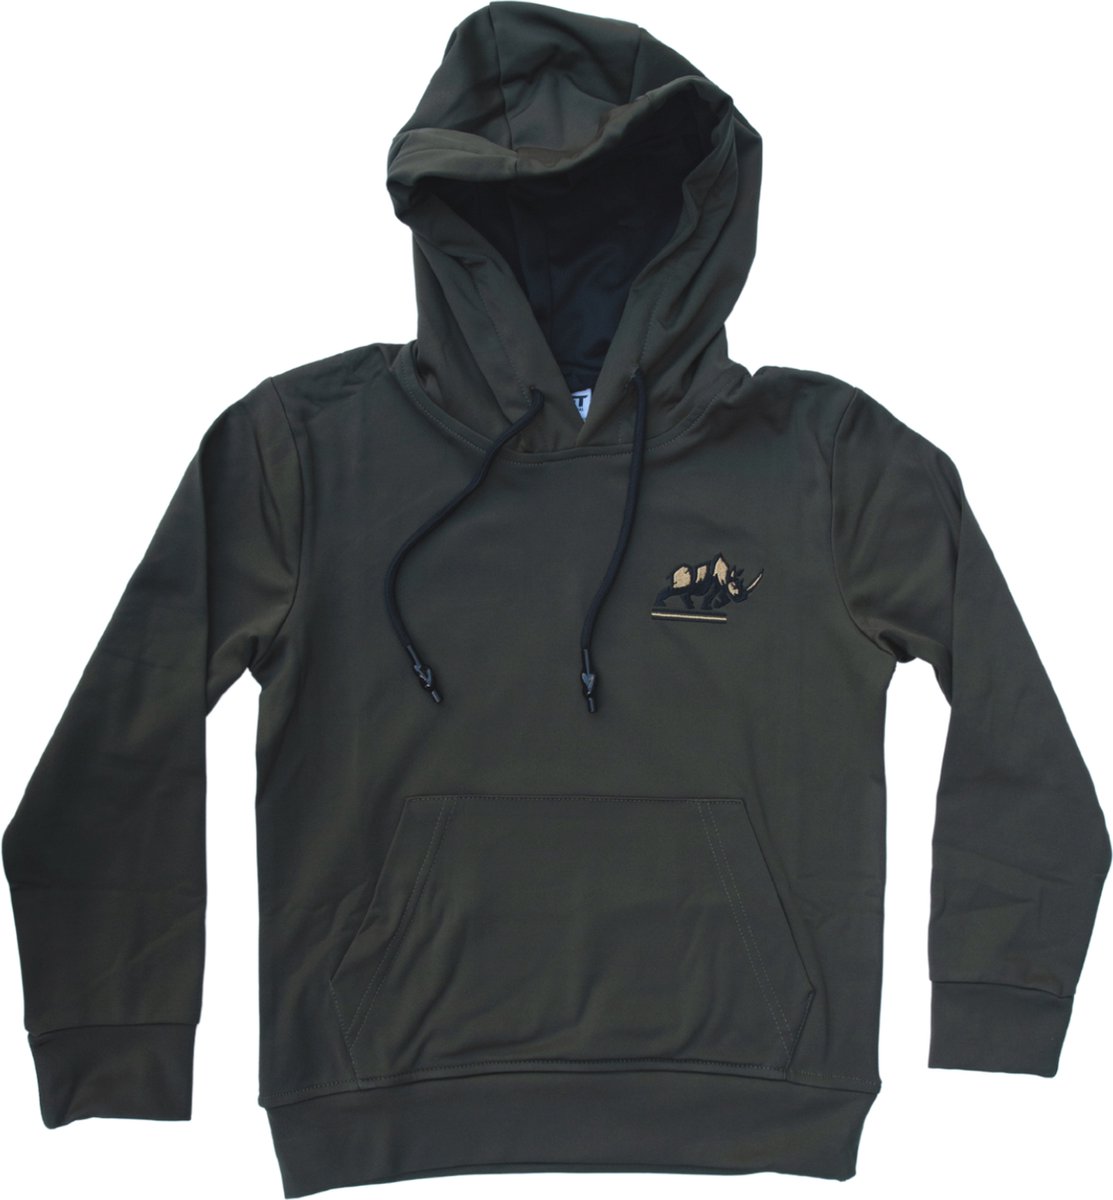 KAET - hoodie - unisex - Donkergroen - maat - M - outdoor - sportief - trui met capuchon - zacht gevoerd